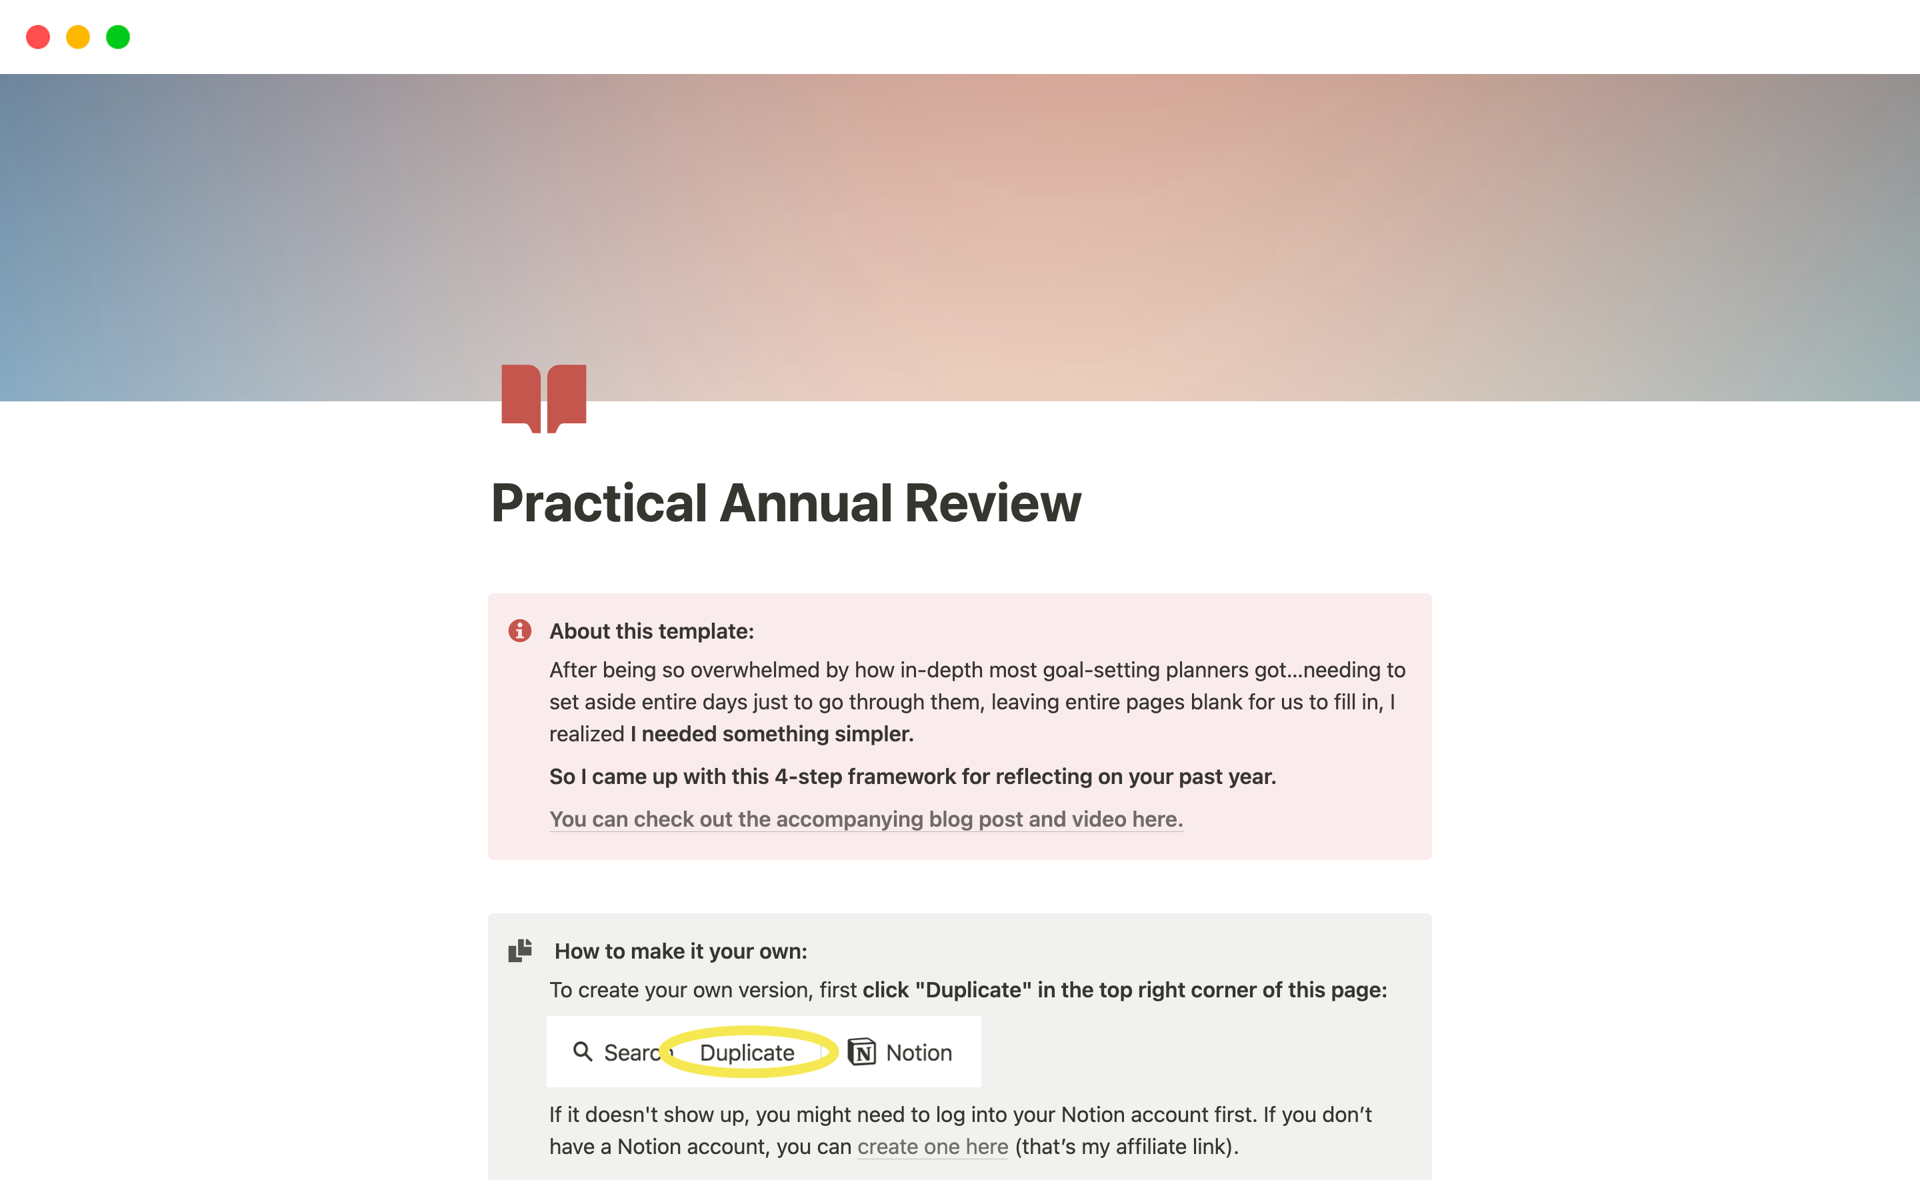 Uma prévia do modelo para Practical Annual Review